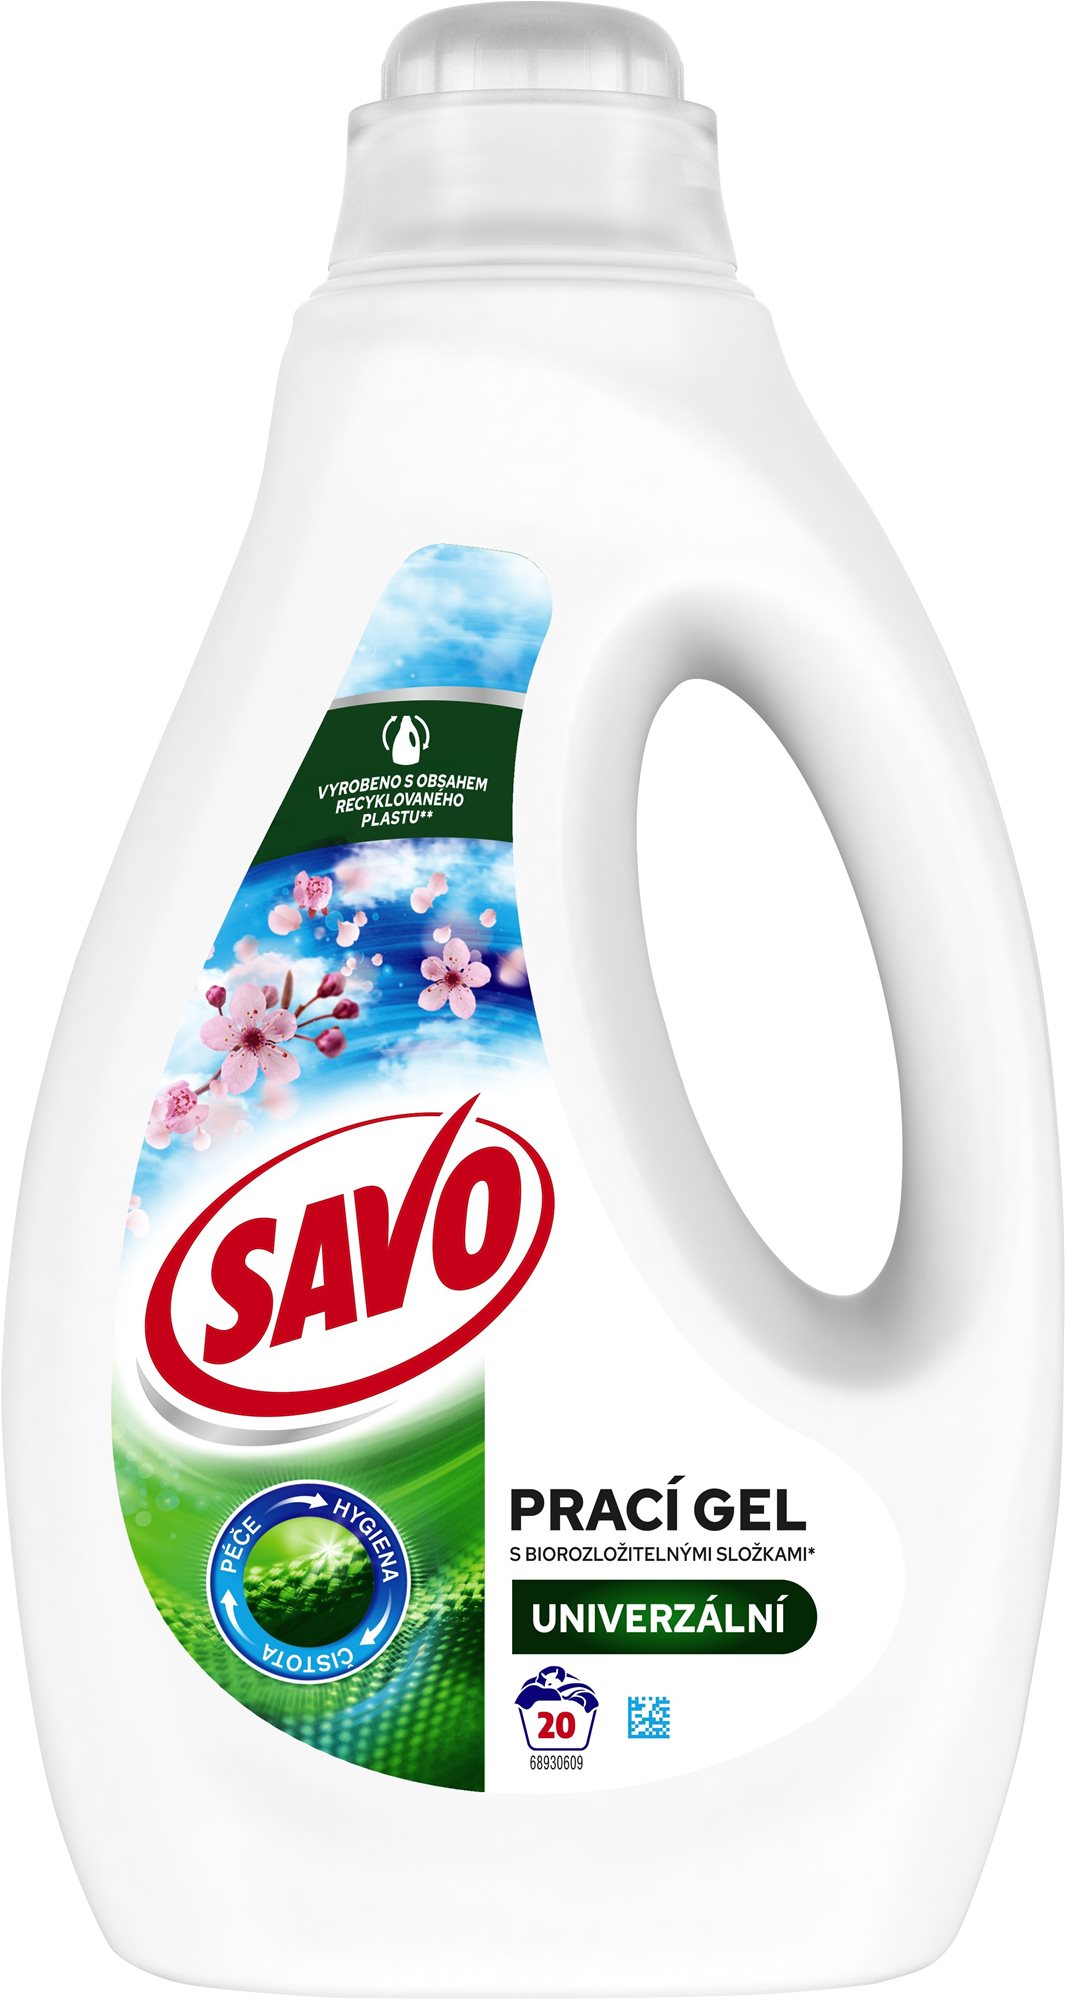 SAVO Tavaszi frissesség színes és fehér ruhákra (20 mosás)